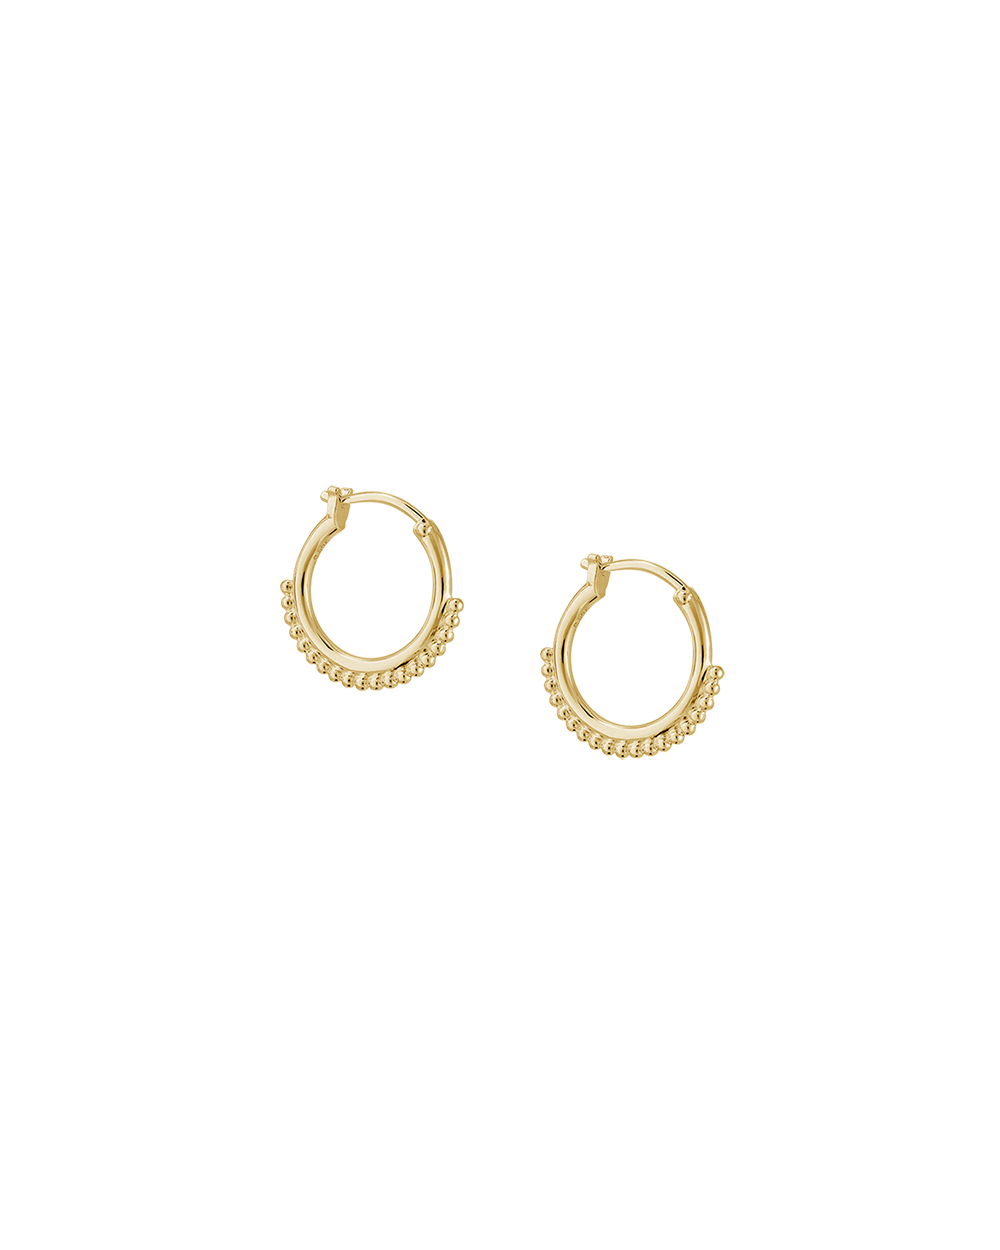 DETAIL HOOP EARRINGS (18K GOLD PLATED) - IMAGE 1